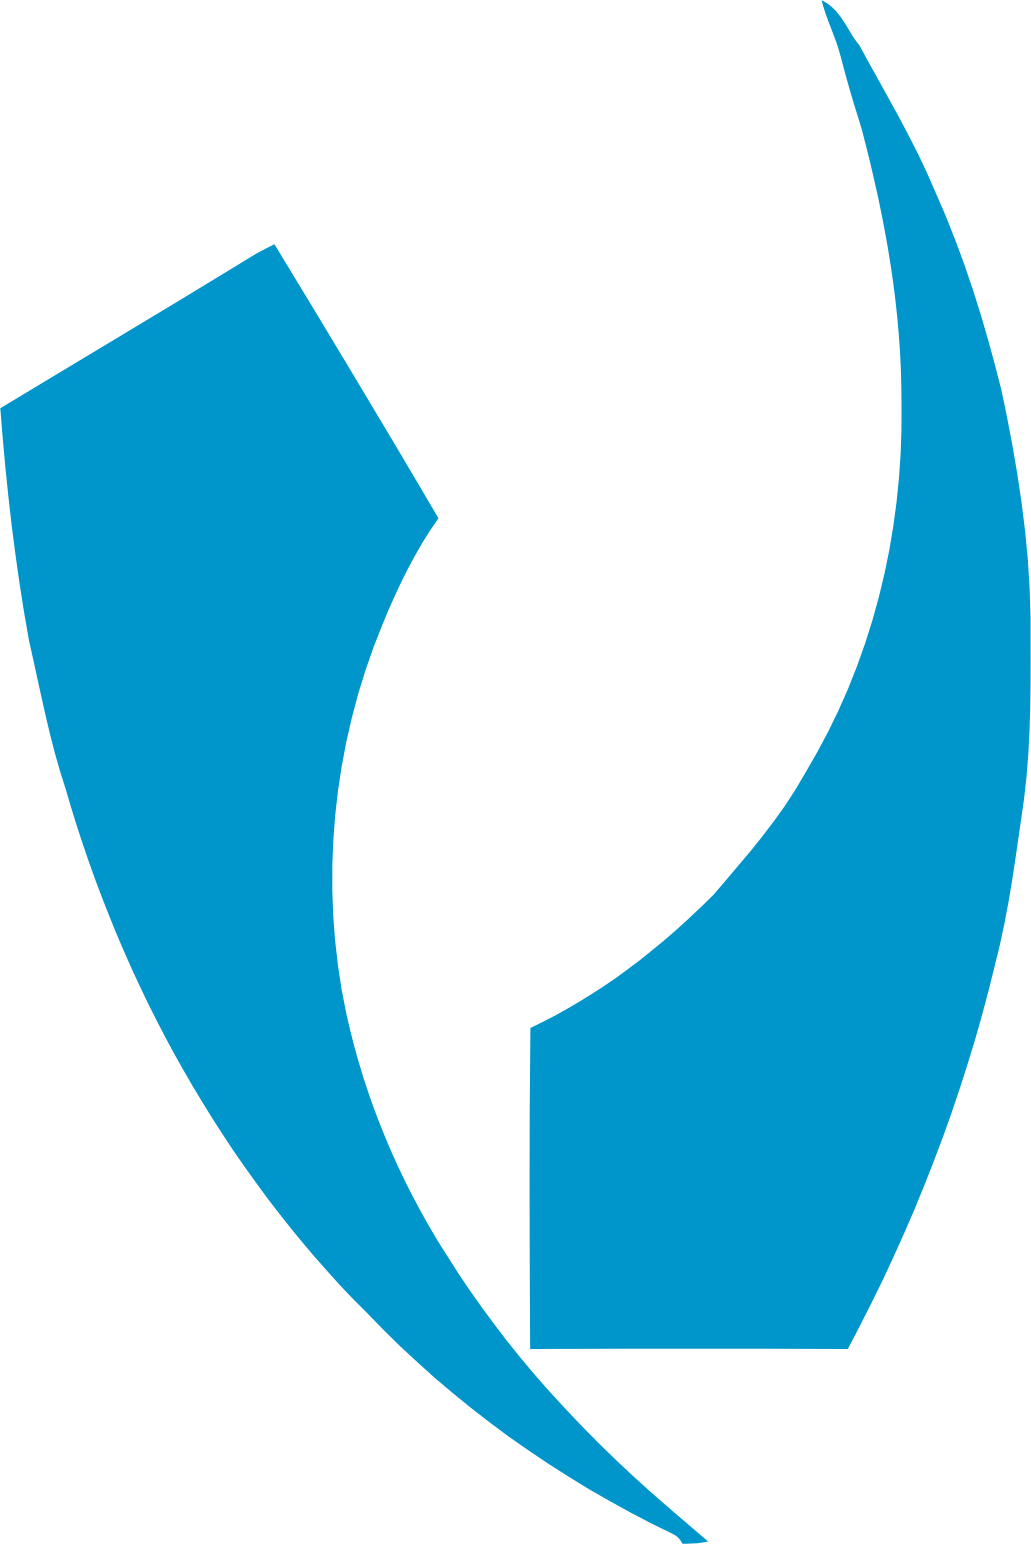 Davis Commodities logo (transparent PNG)